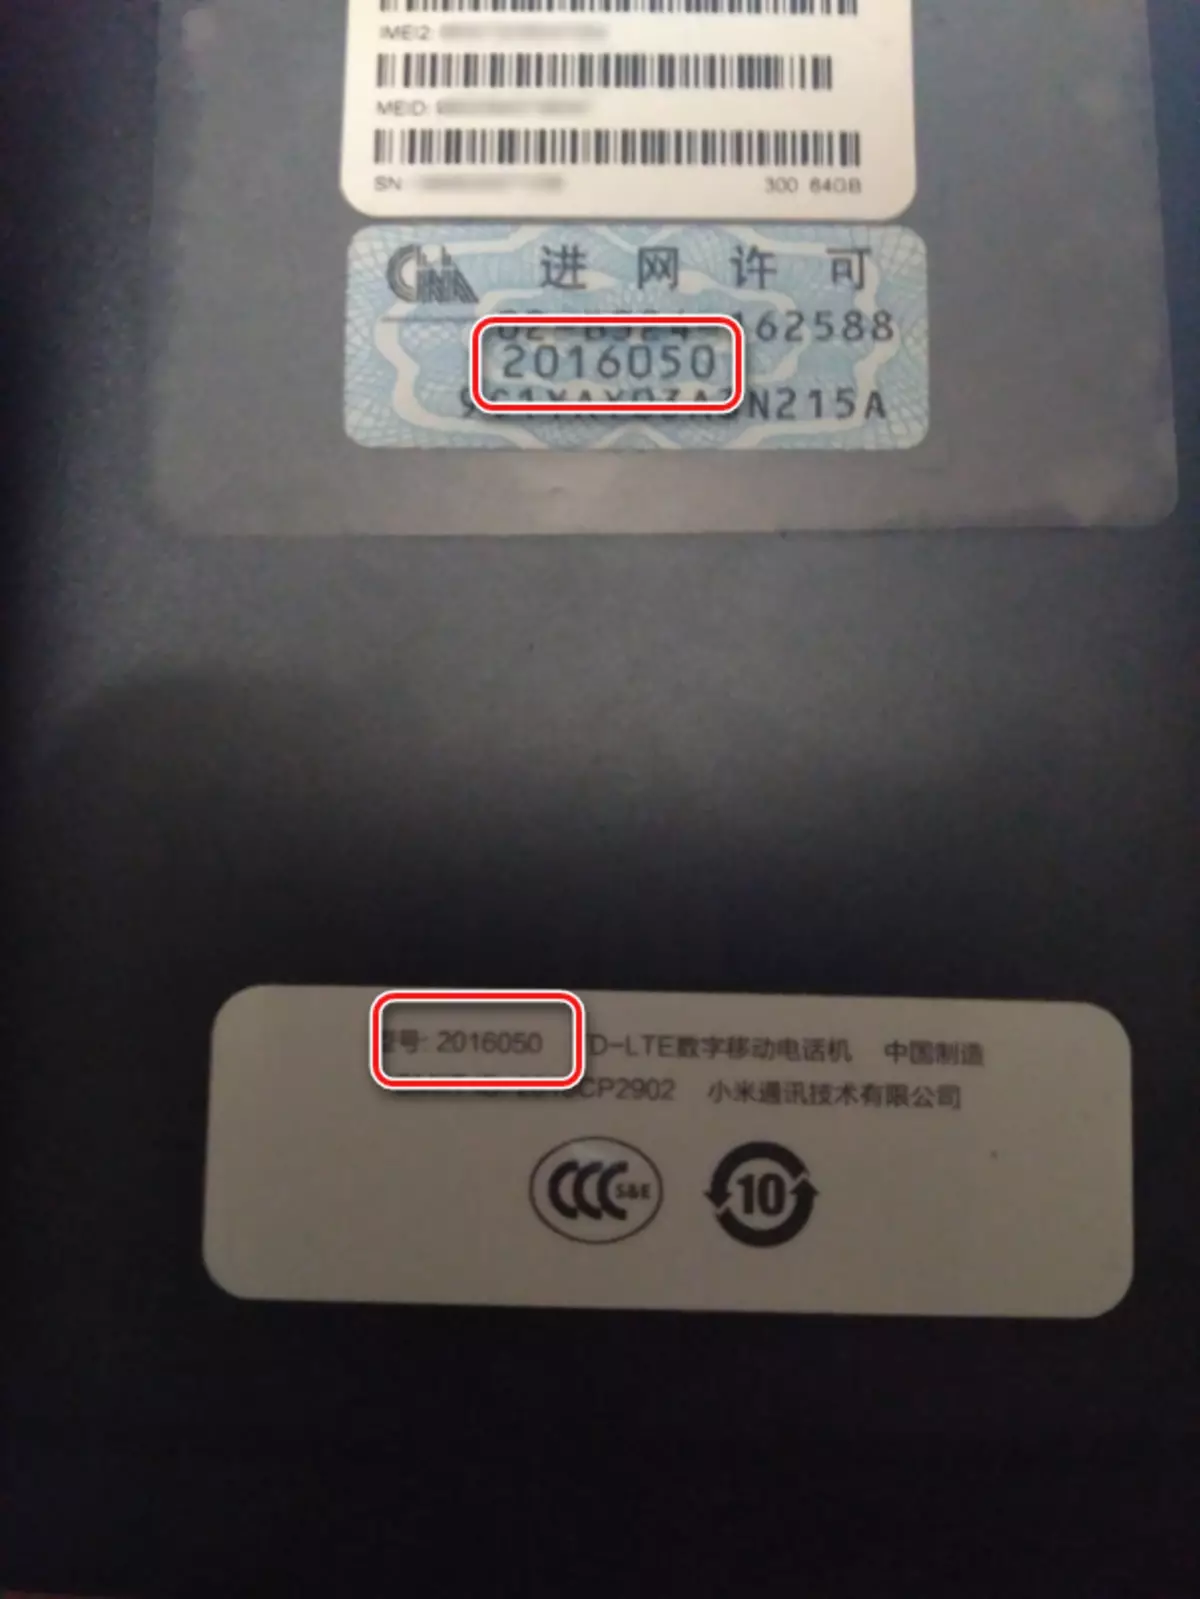 Xiaomi Redmi Note 4 Ma'anar sigar Sticker a kan Smartphone gida